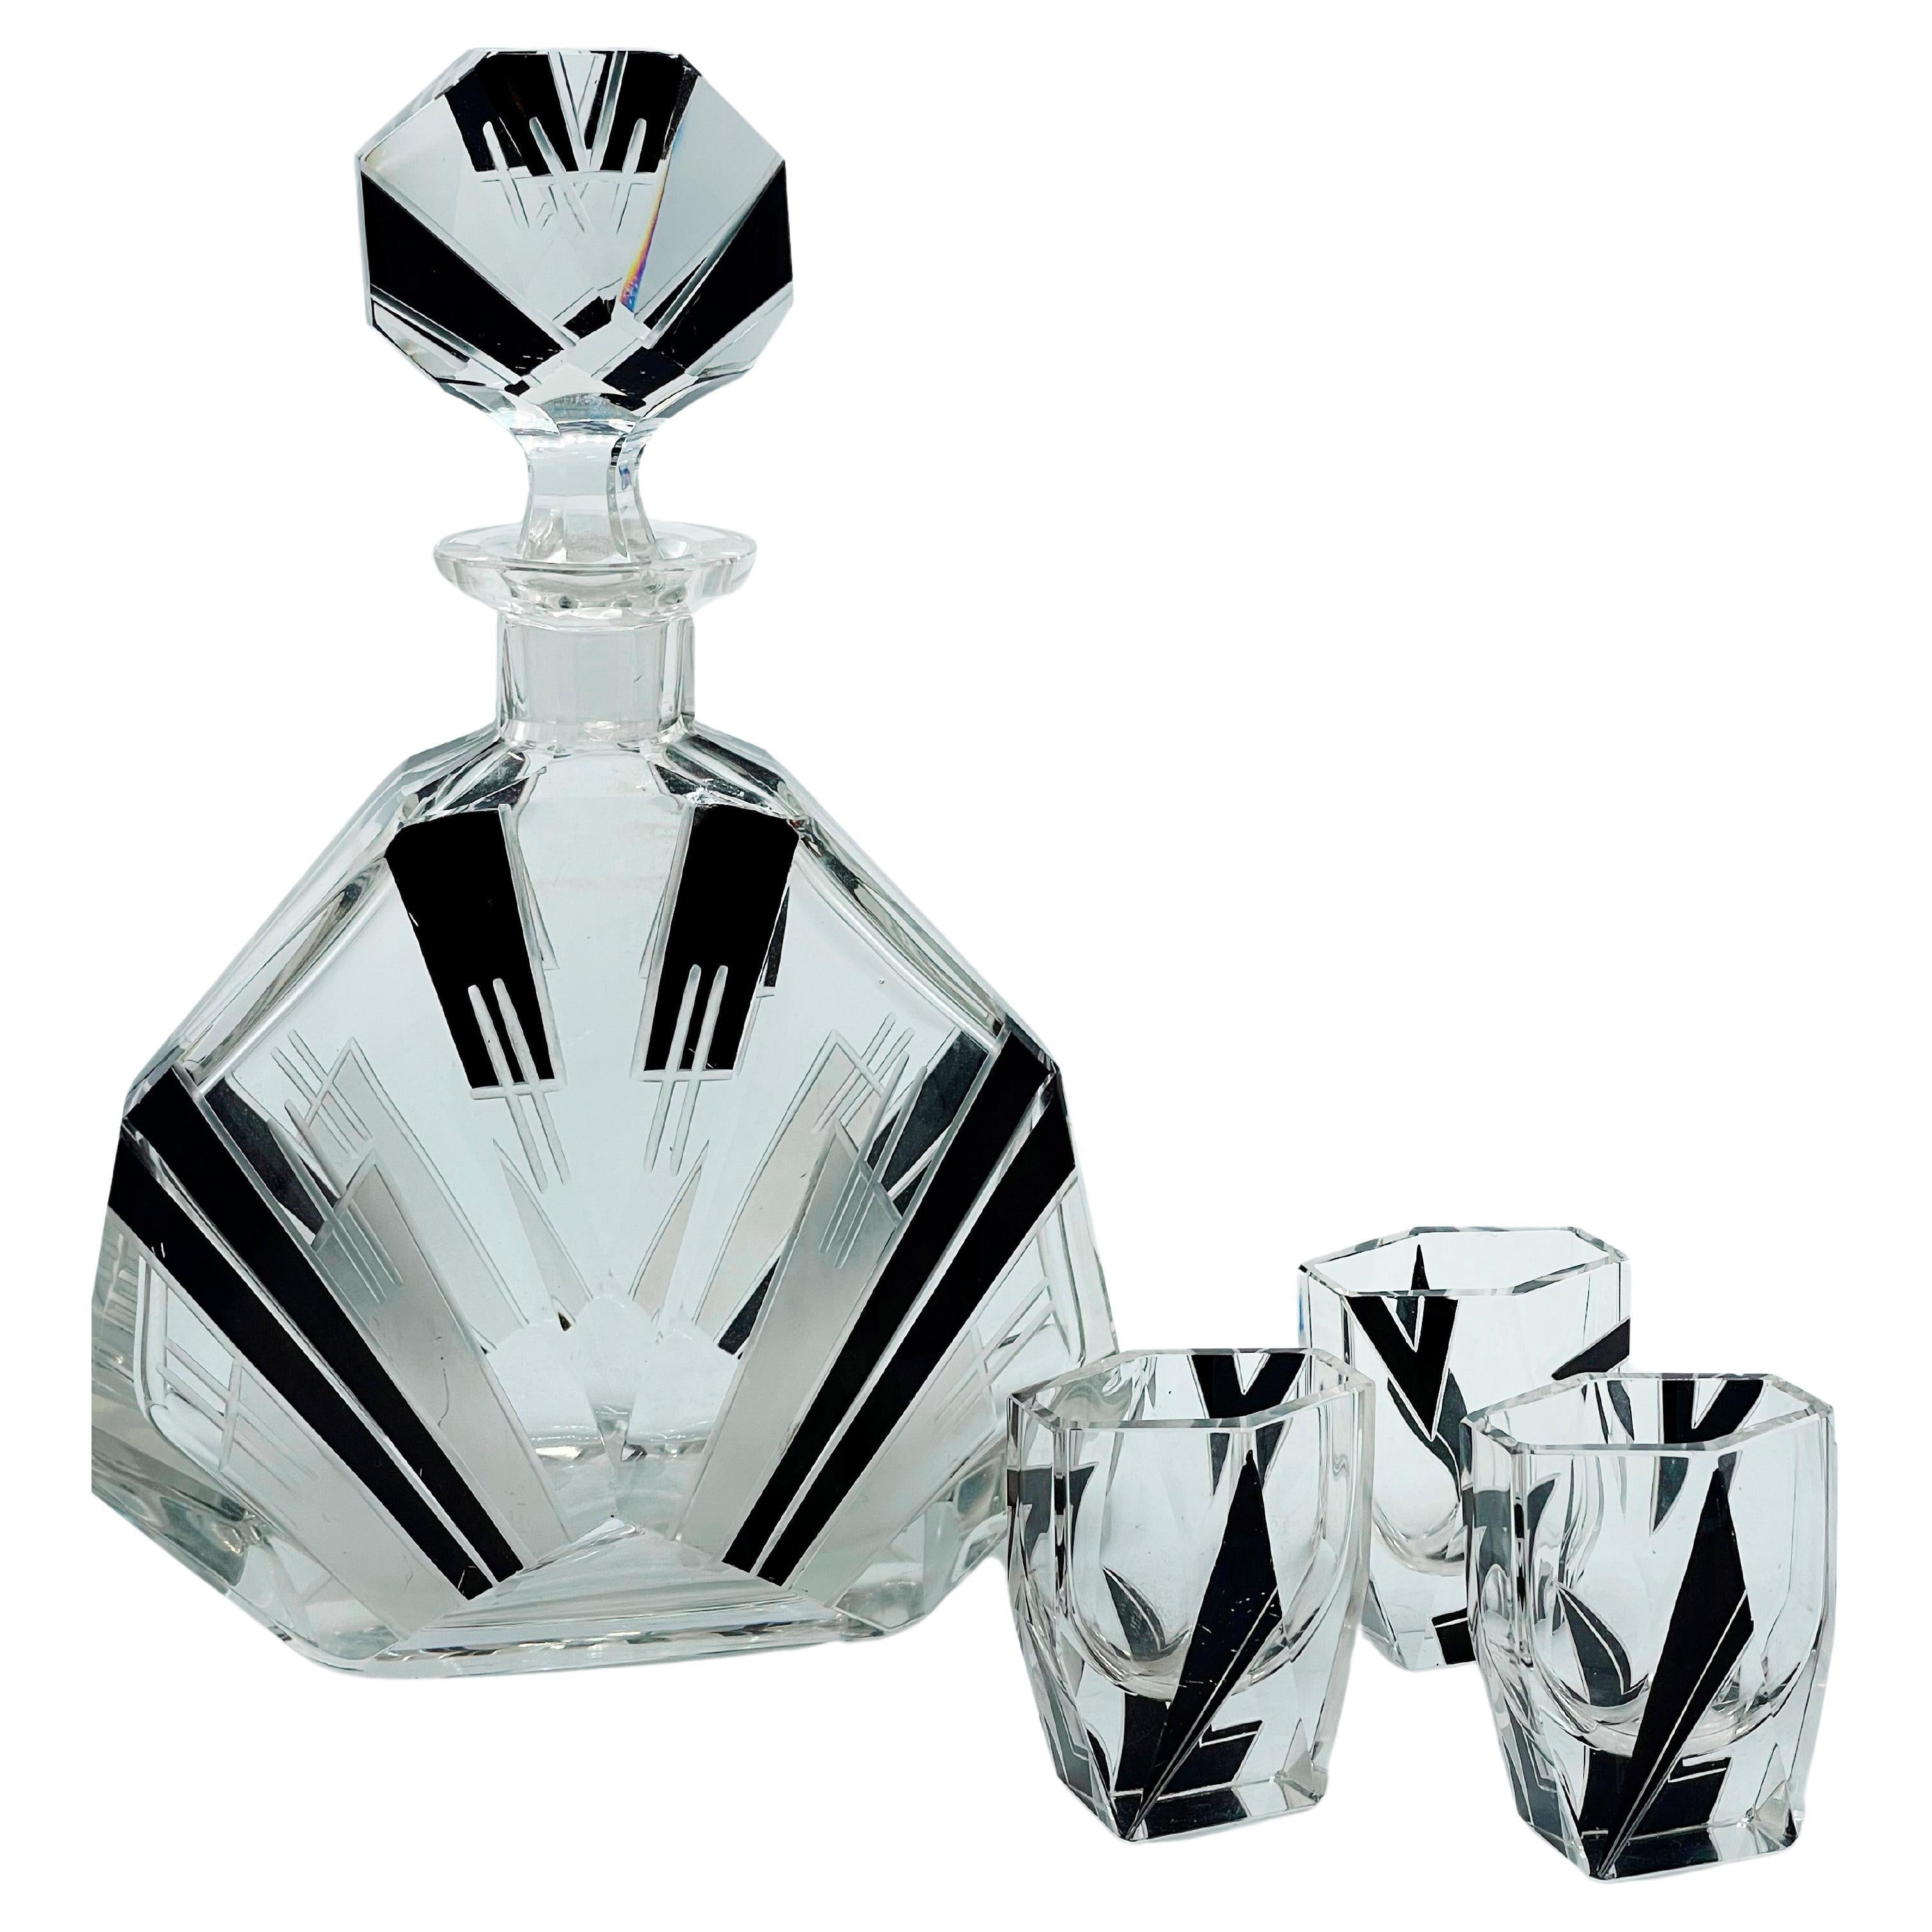 Art Deco 1930er Tschechisches Geometrisches Glas Dekanter Set
Sehr stilvolles und ansprechendes Art-Déco-Karaffen-Set mit 3 passenden Gläsern und einer Karaffe. Das Ganze ist stark emailliert mit geometrischem Dekor. Die Farbe ist schwarz der